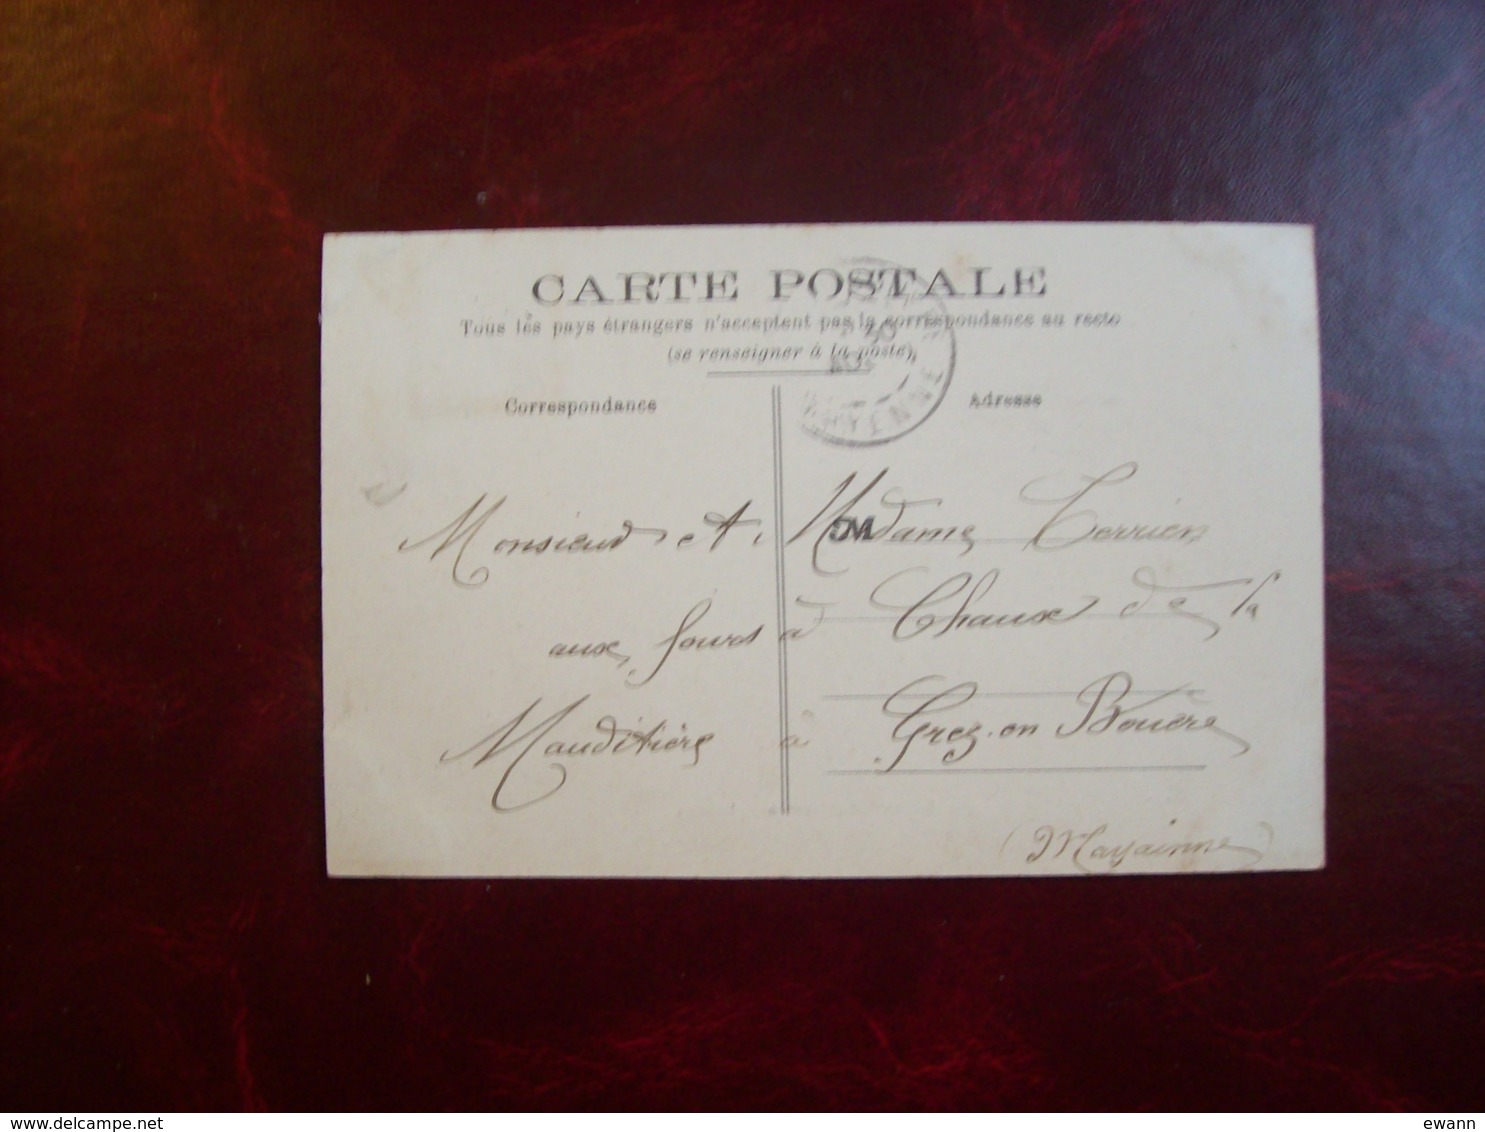 Carte Postale Ancienne De Louverné: La Gare - Louverne